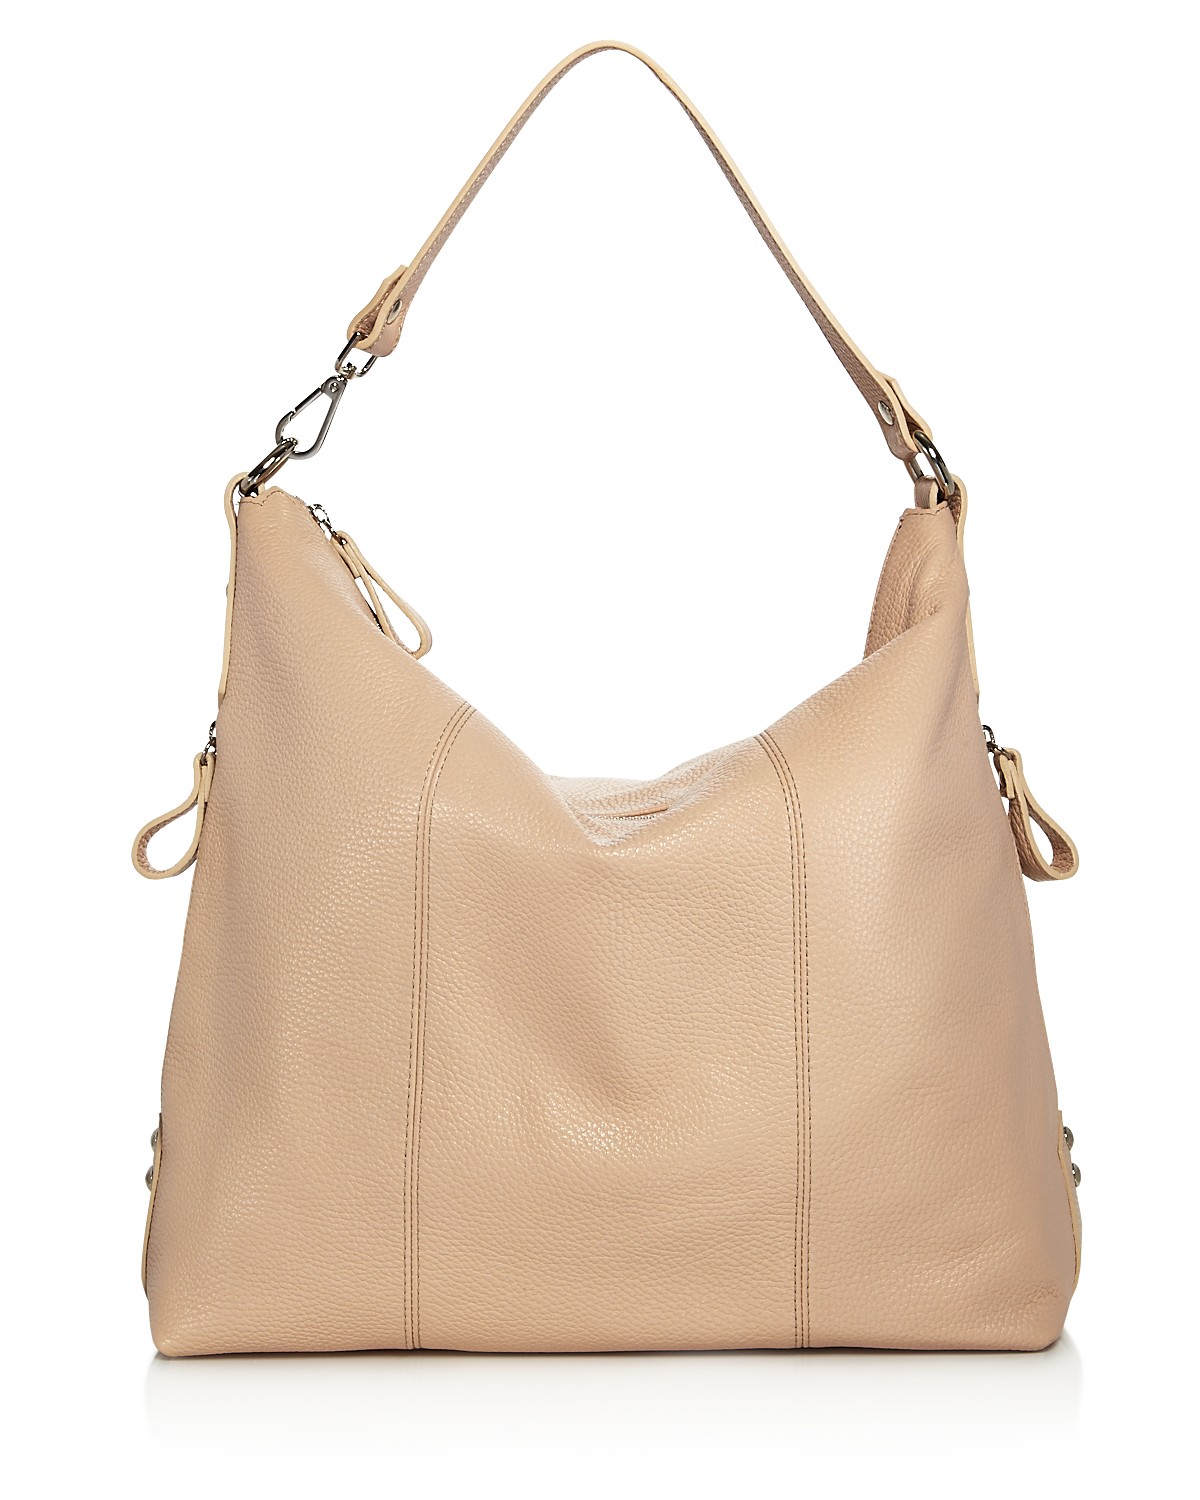 Shop 8 Fabulous Finds From The Bloomingdales Designer Handbag Sale